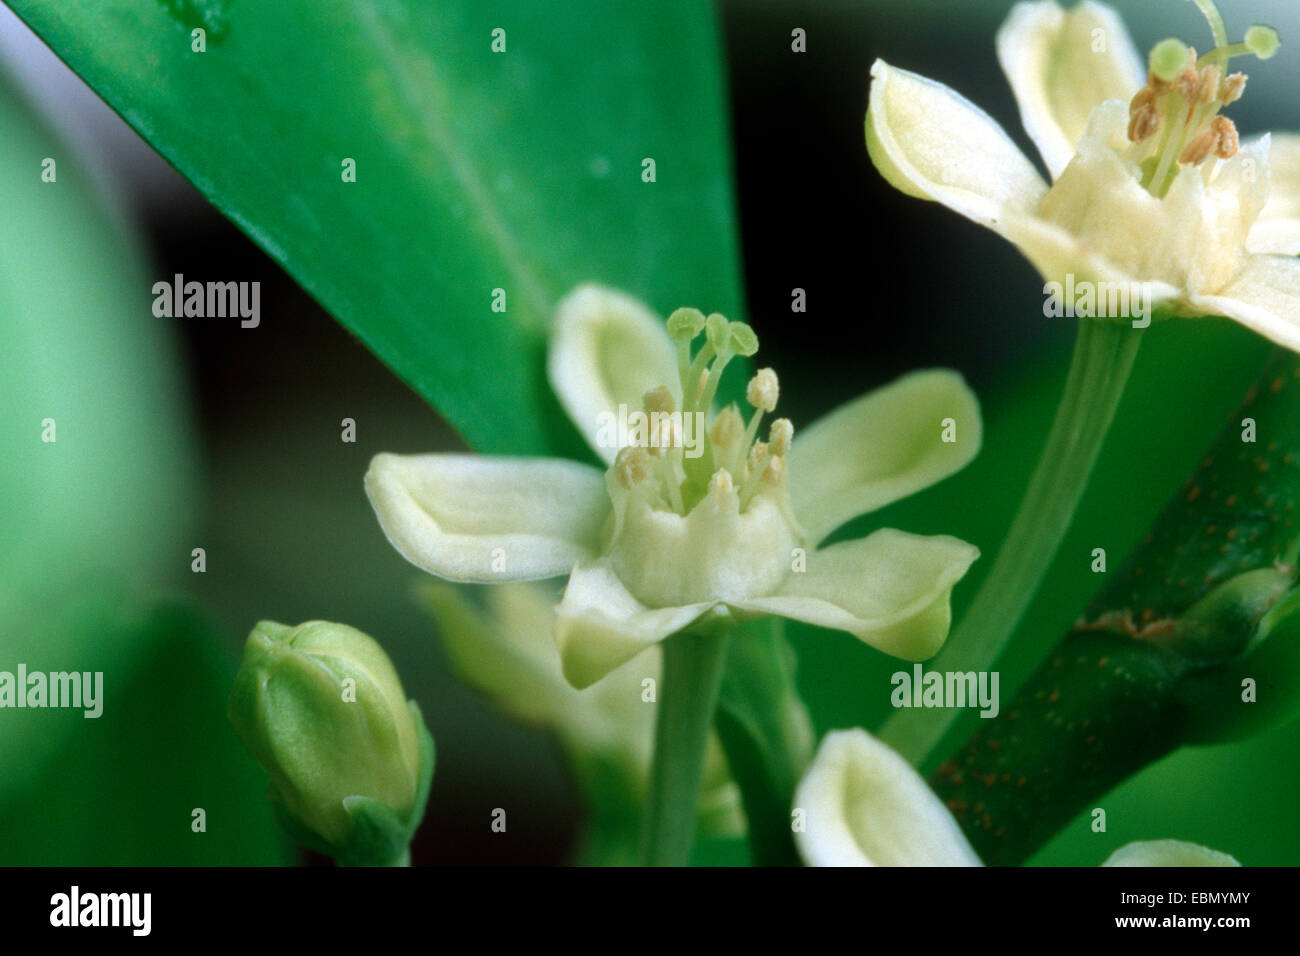 cocaine, Bolivian coca (Erythroxylon coca, Erythroxylum coca), closeup of the blossoms Stock Photo